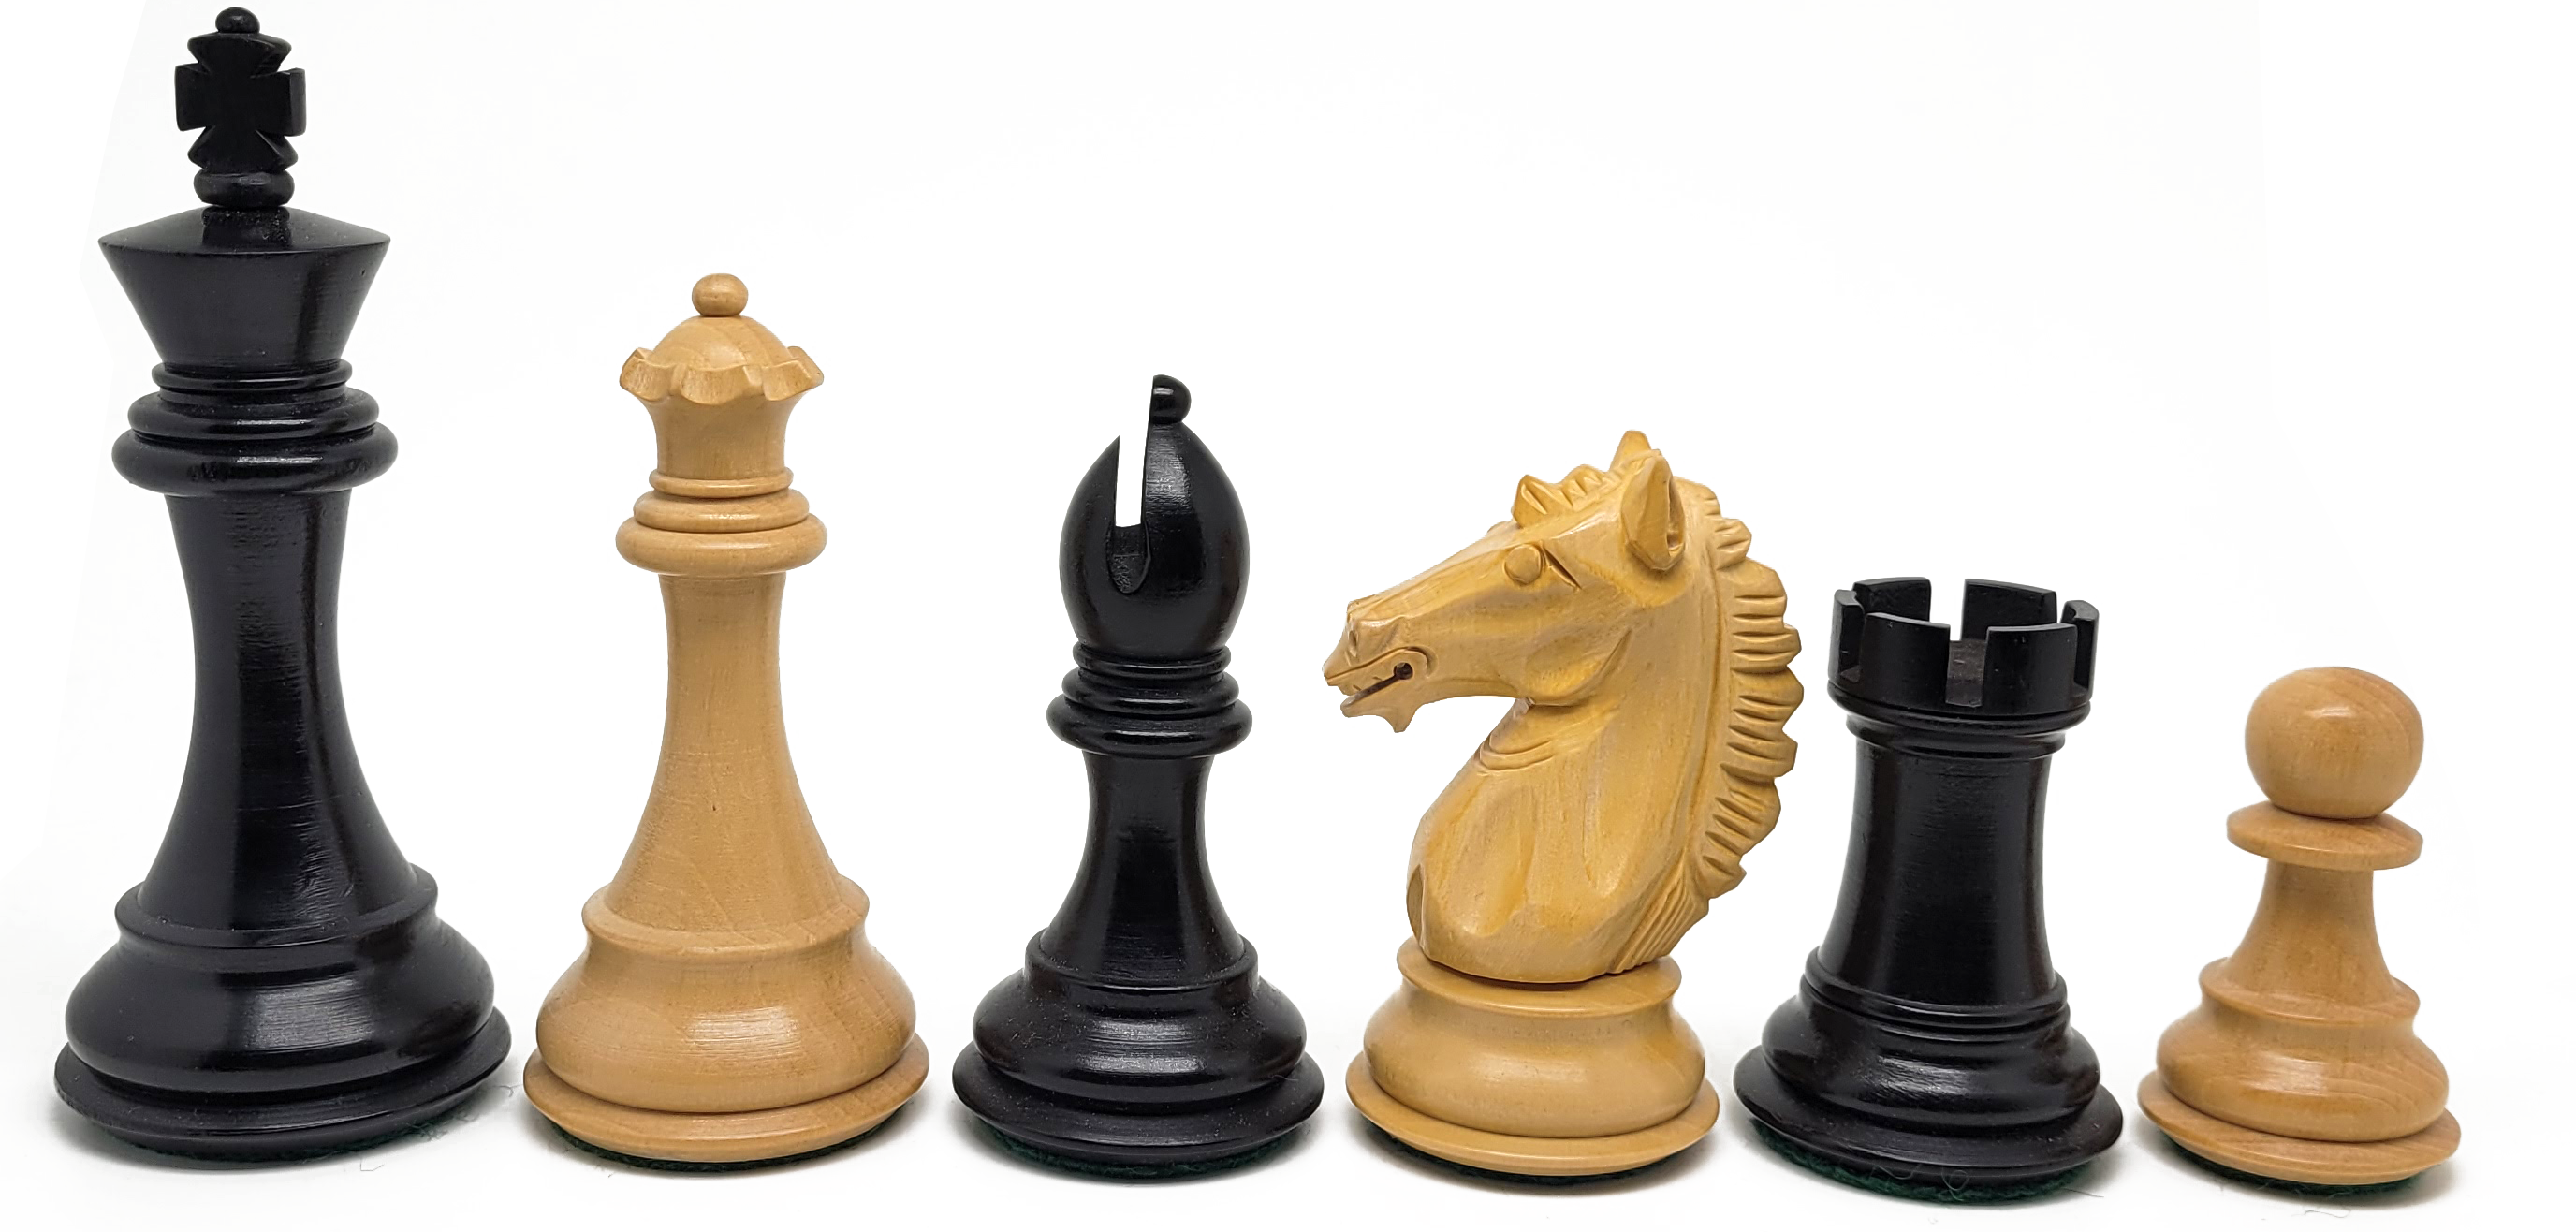 VI/ Piezas de ajedrez modelo Alban "4" Ebanizado